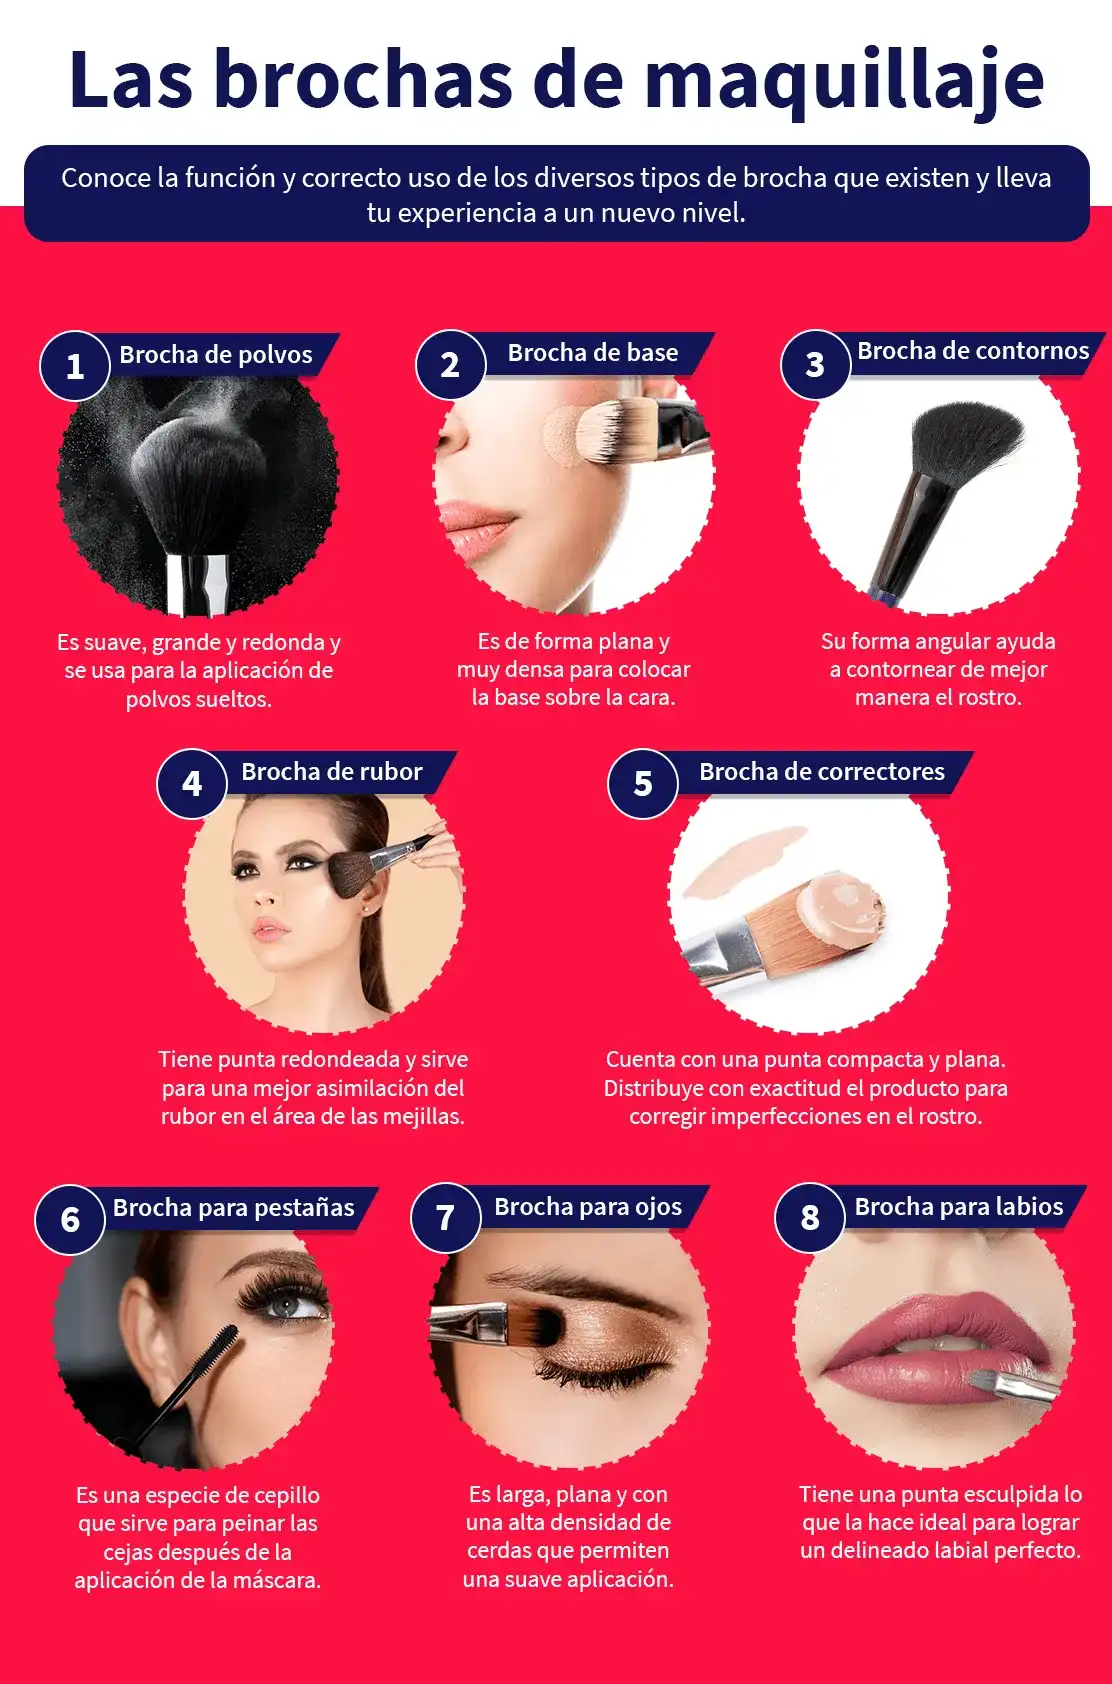 Cómo usar tus brochas de maquillaje correctamente?